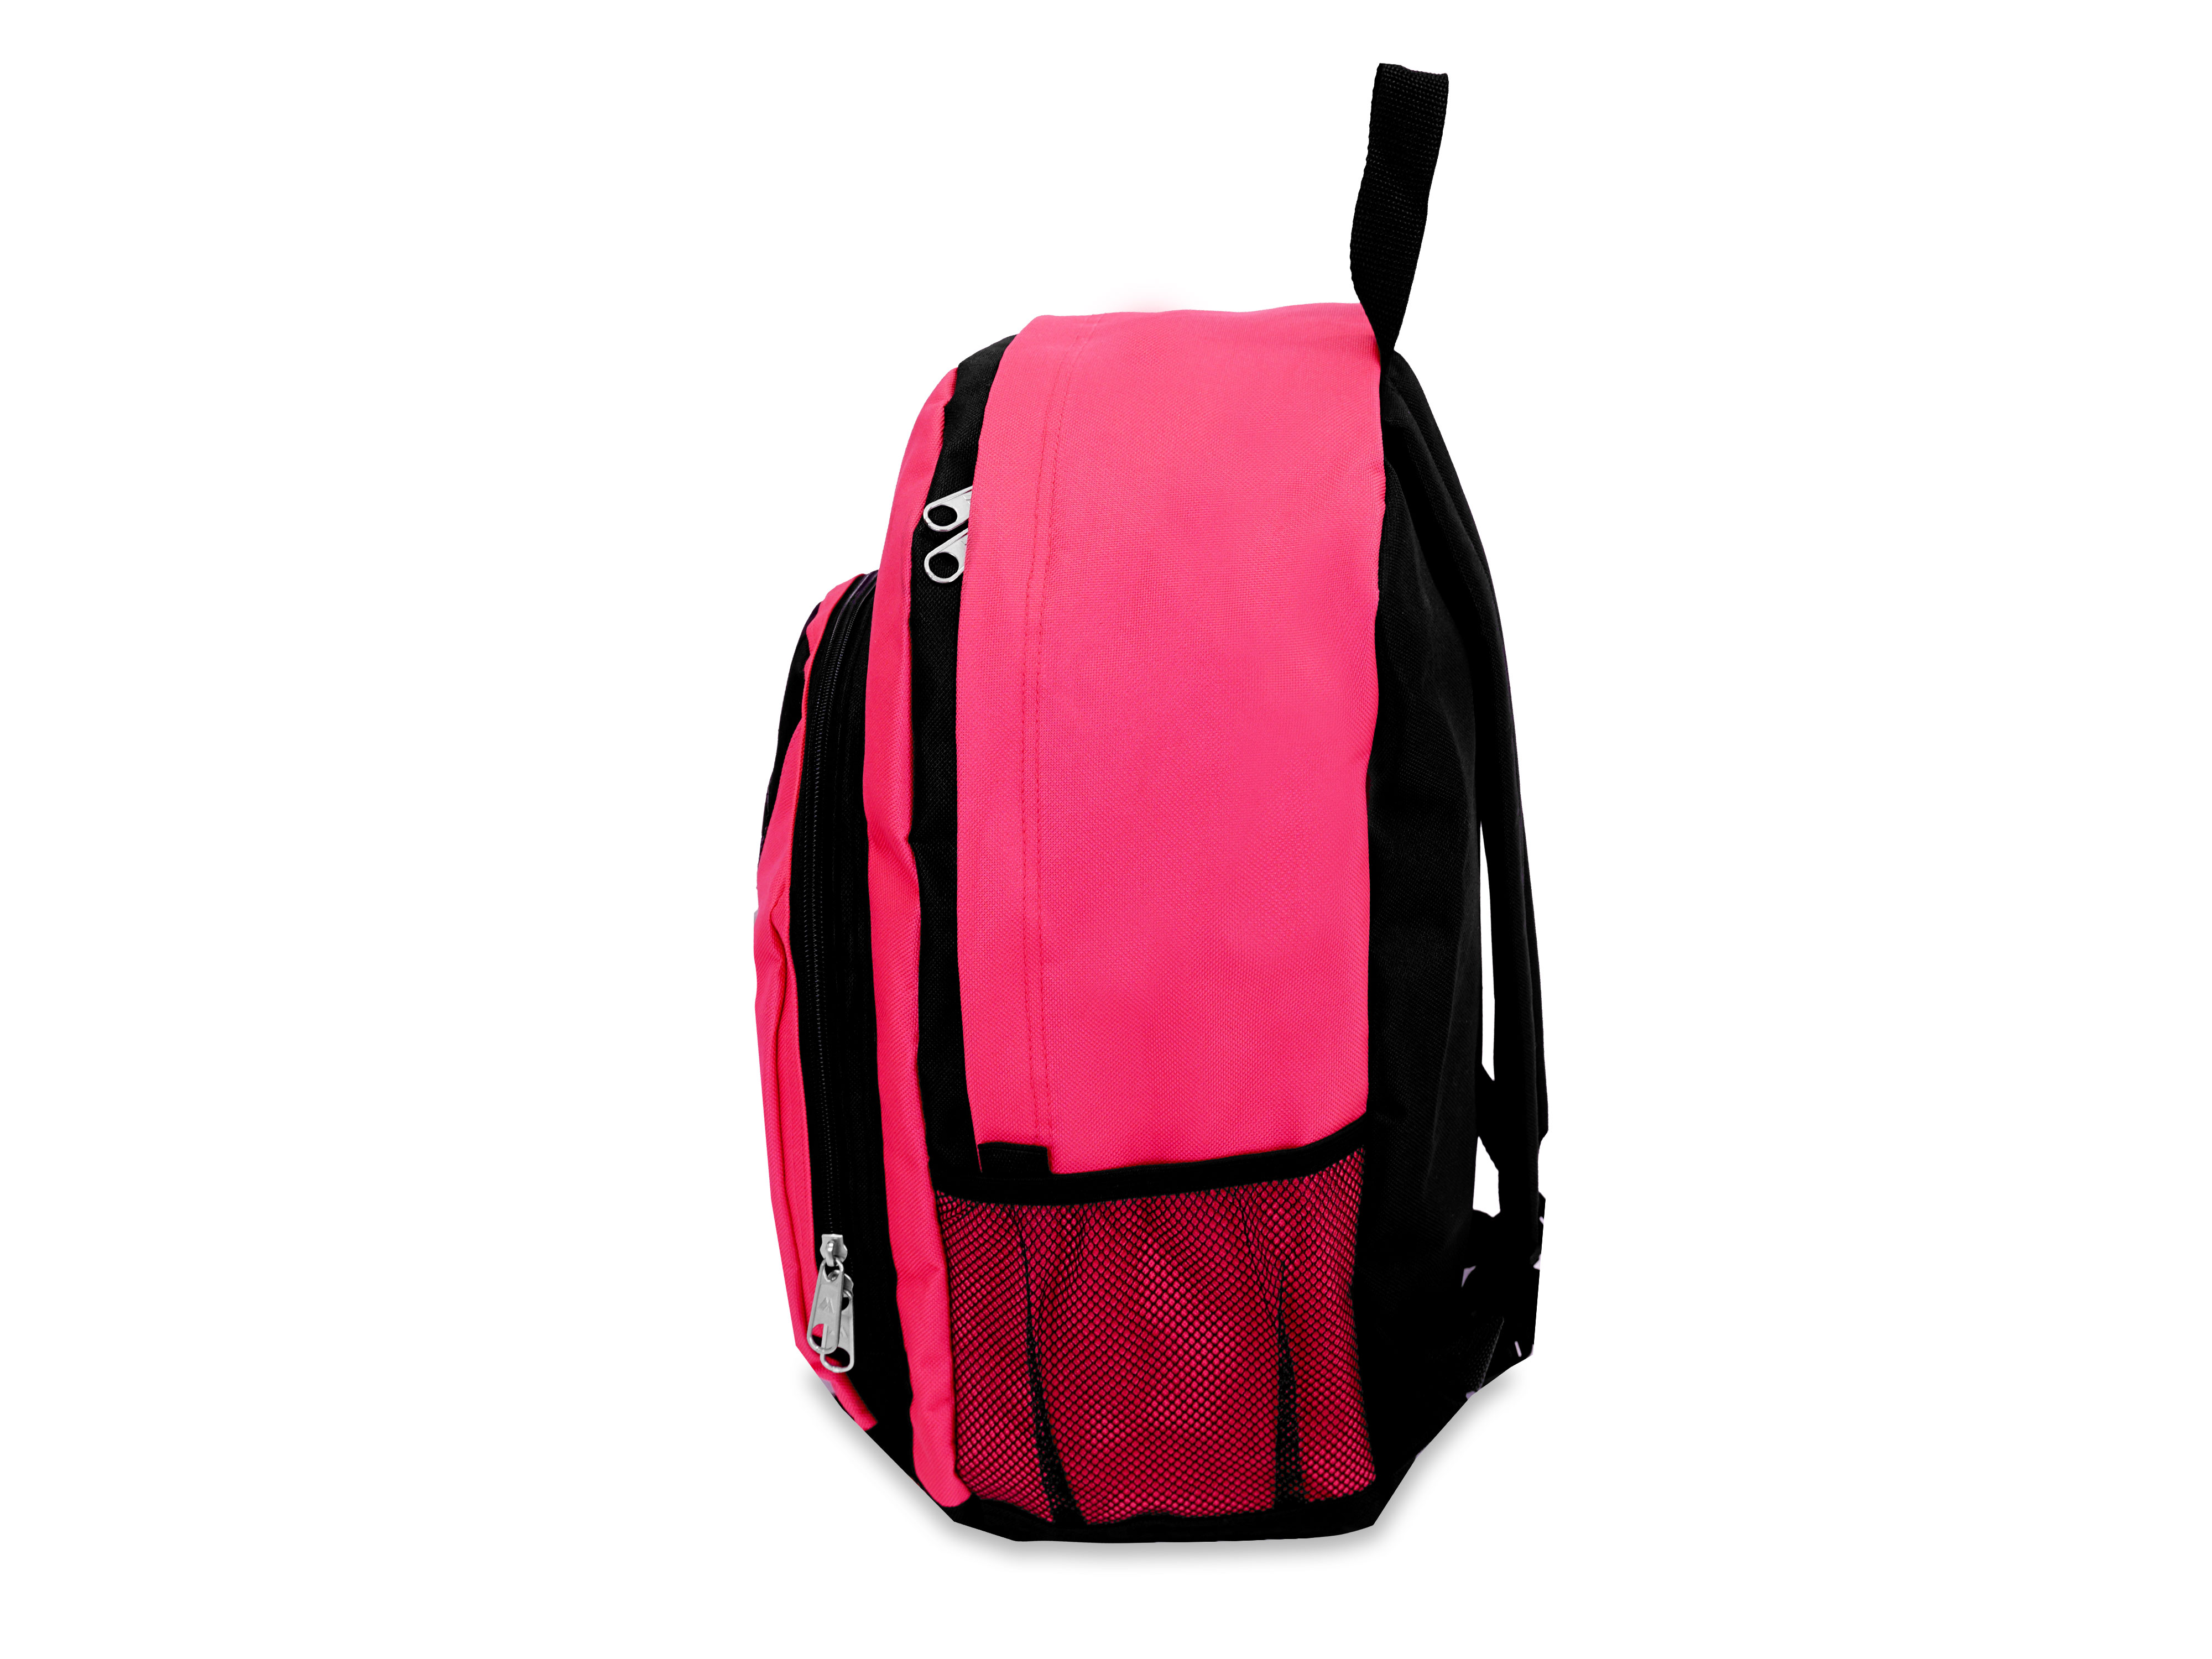 Everest 17" Backpack with Front & Side Pockets, HOT PINK/BLACK All Ages, Unisex - BP2072-HPK/BK - image 4 of 4